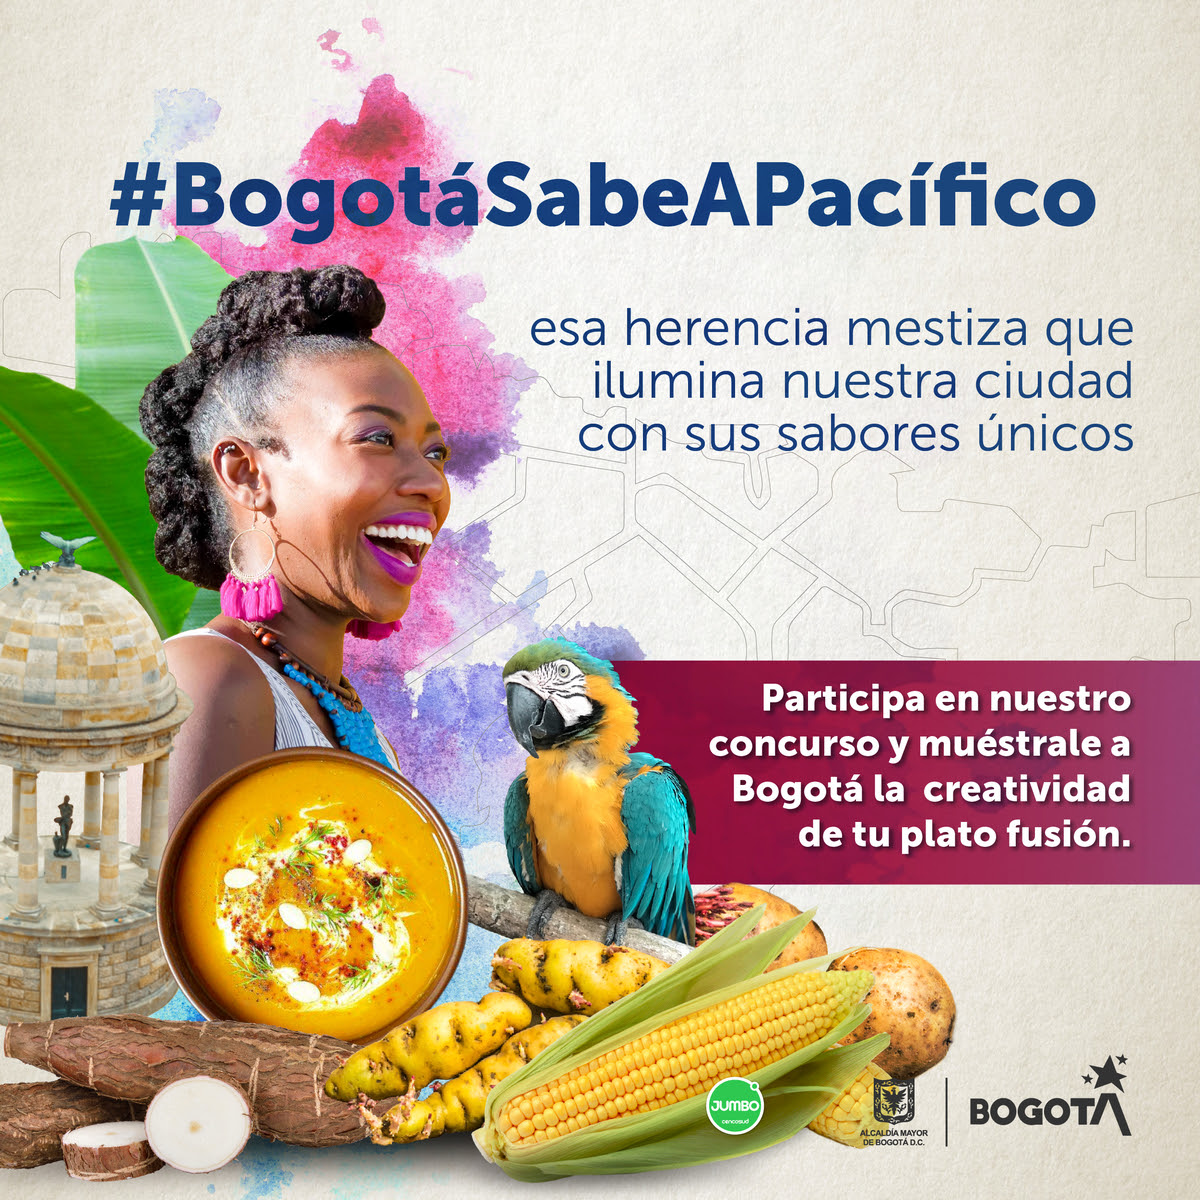 BogotáSabeAPacífico Si eres chef o tienes un restaurante en Bogotá ¡este concurso es para ti!